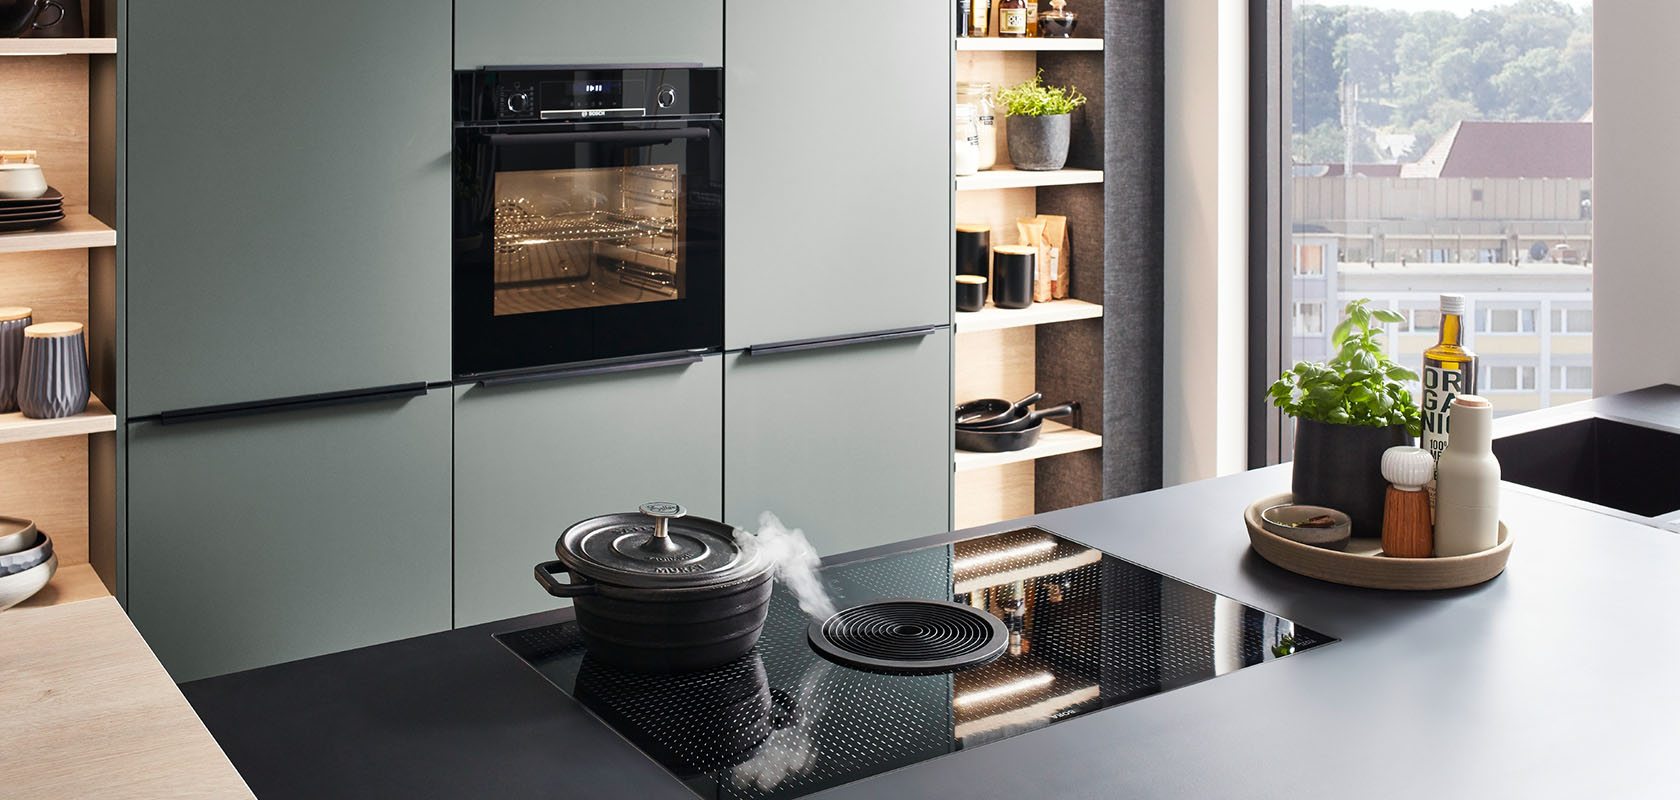 Moderní kuchyňský interiér s elegantní zelenou kuchyňskou linkou, vestavěnými spotřebiči a indukční varnou deskou na tmavém pultu, vyzařující současný styl a funkcionalitu.